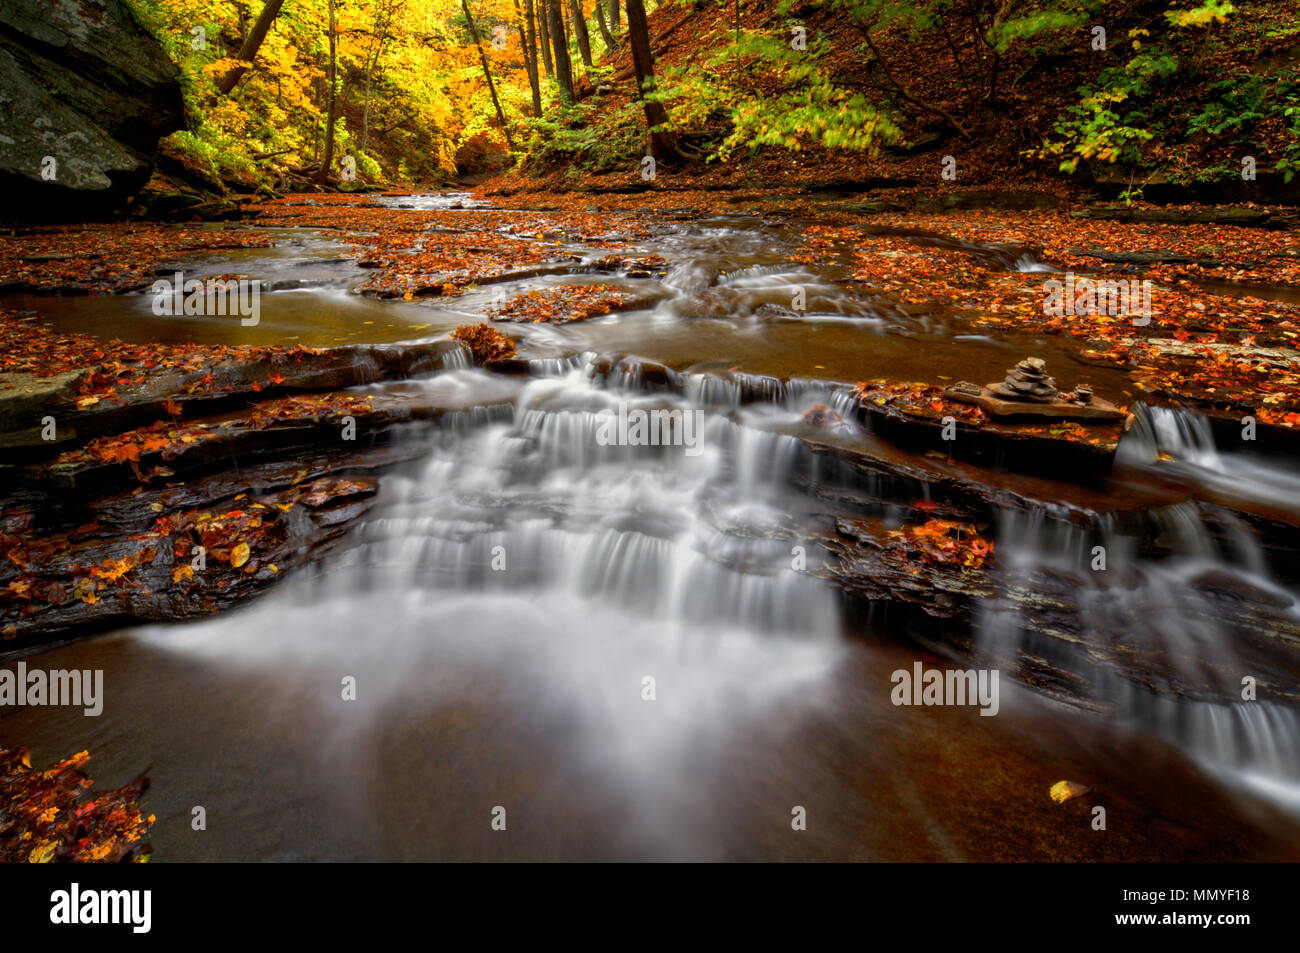 Une petite cascade sur Brandywine Creek dans le parc national de Cuyahoga Valley dans l'Ohio. Vu ici à l'automne avec des feuilles mortes. Banque D'Images